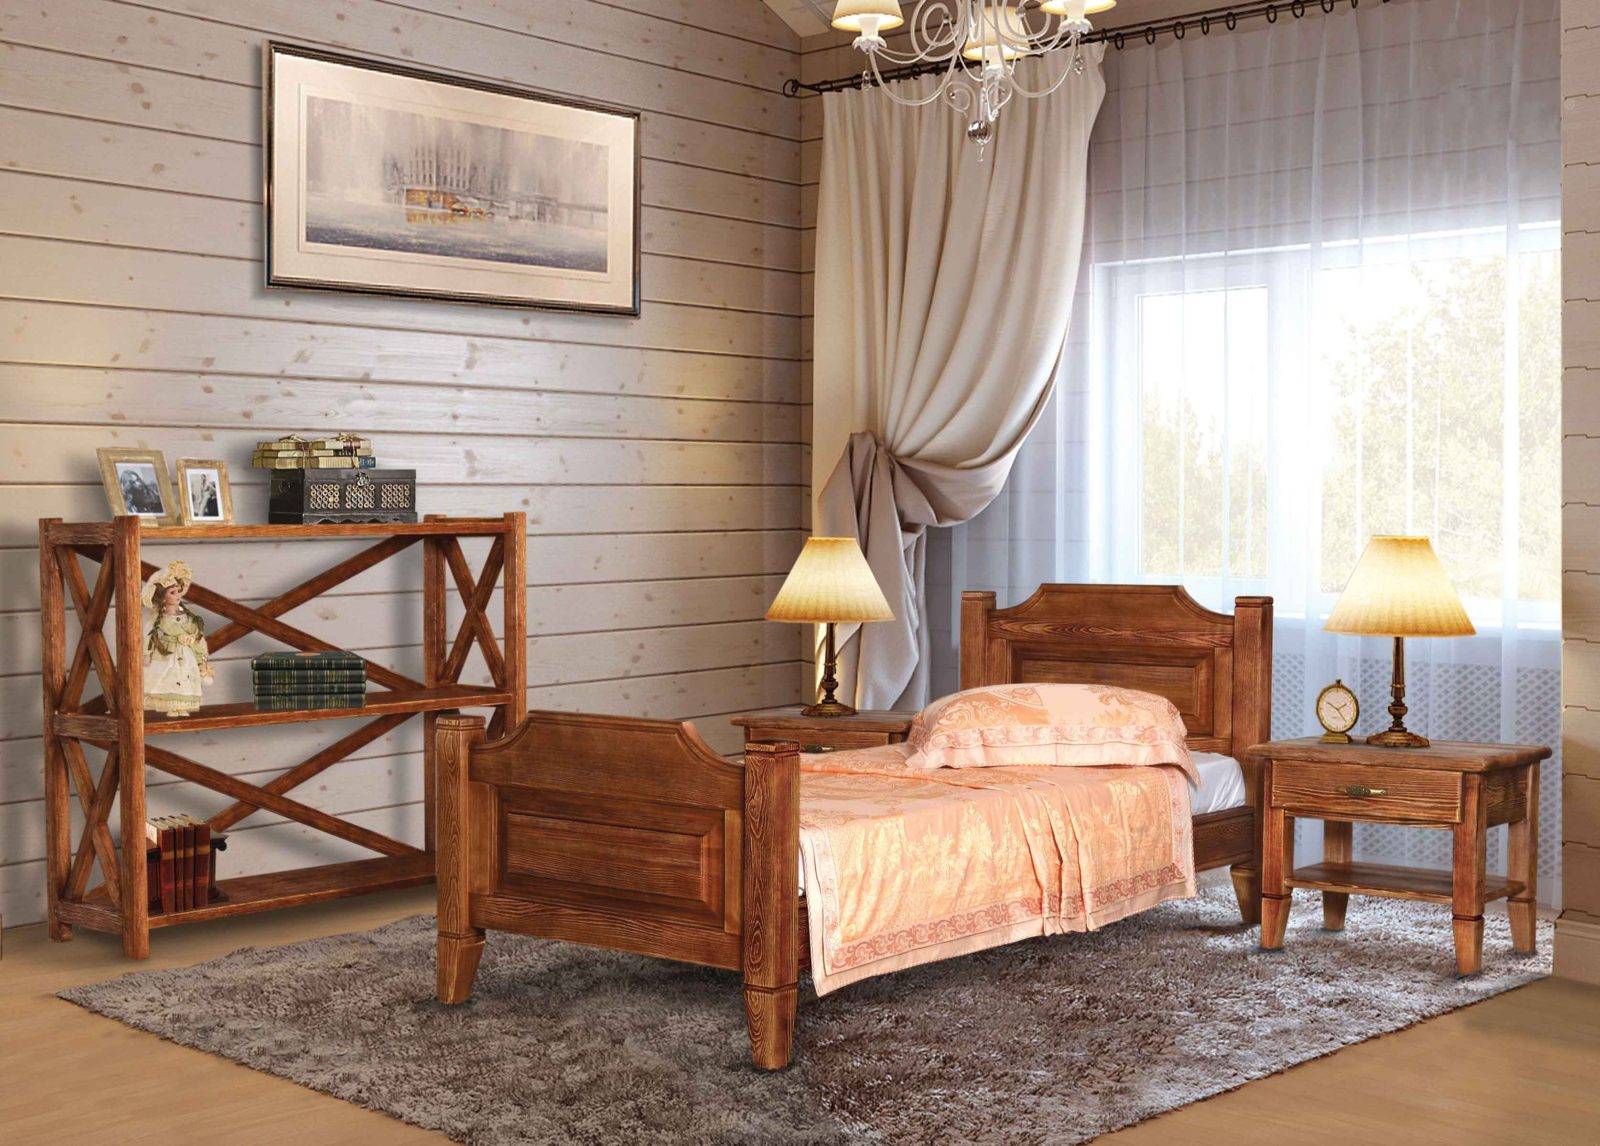 Кровати фокина из массива - натуральность и стиль. деревянные кровати фабрики фокин